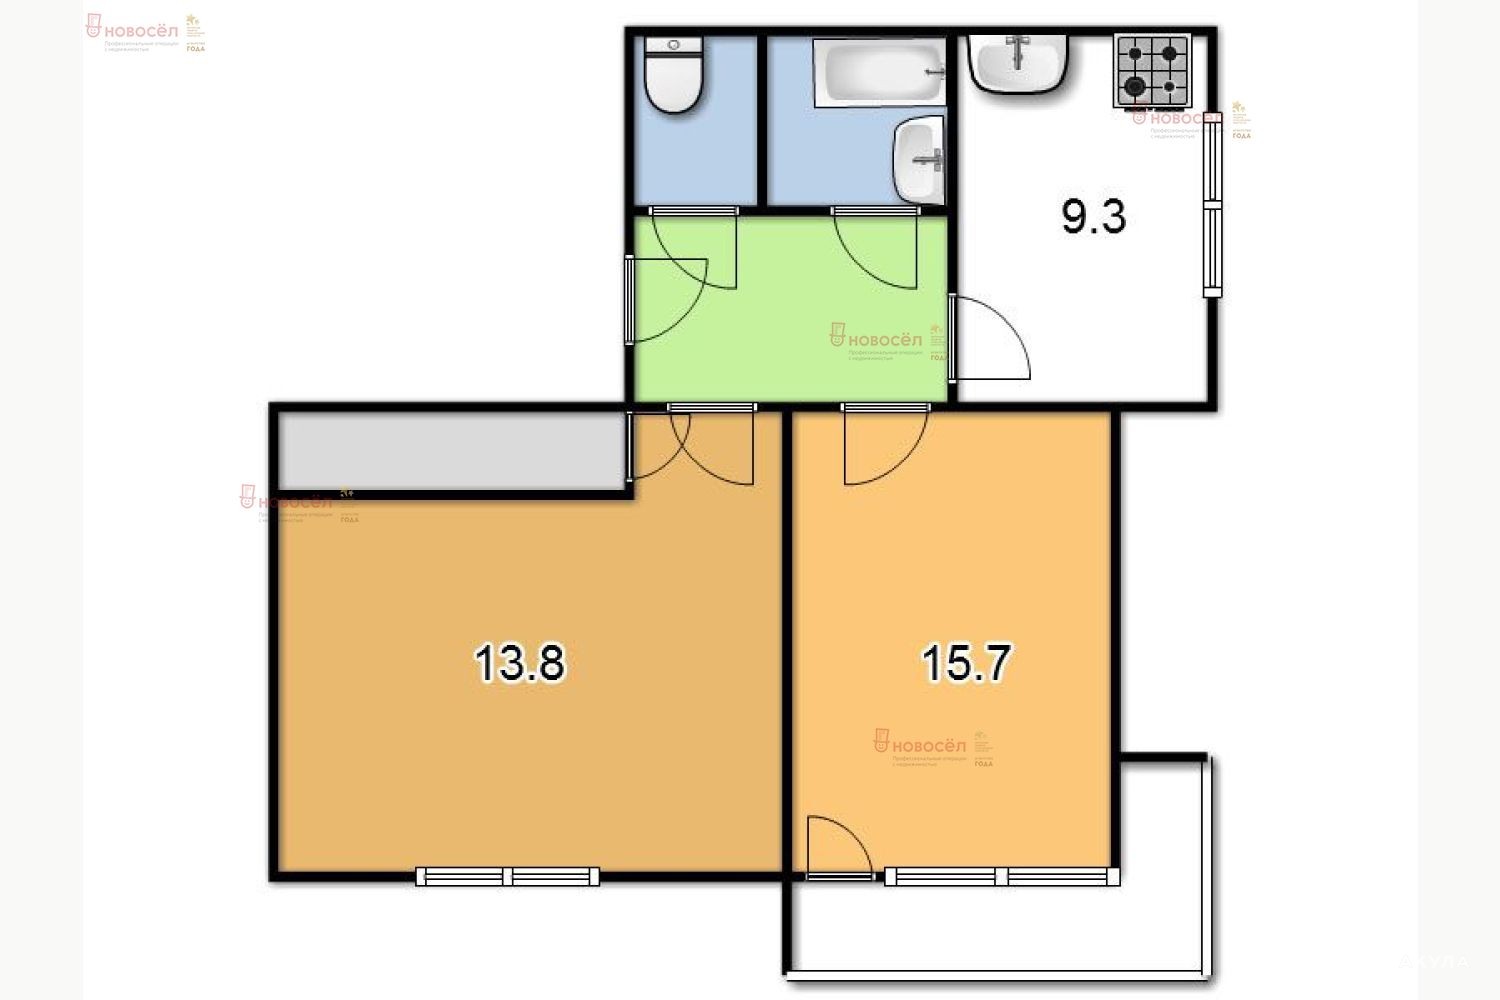 Купить квартиру в екатеринбурге уралмаш 2 комнатная. Планировки 2 этажных квартир площадь. Квартира общей площадью 24 м2. Планировка квартир в Екатеринбурге Уралмаш. Жилой дом ул. Куинджи 66 планировка.